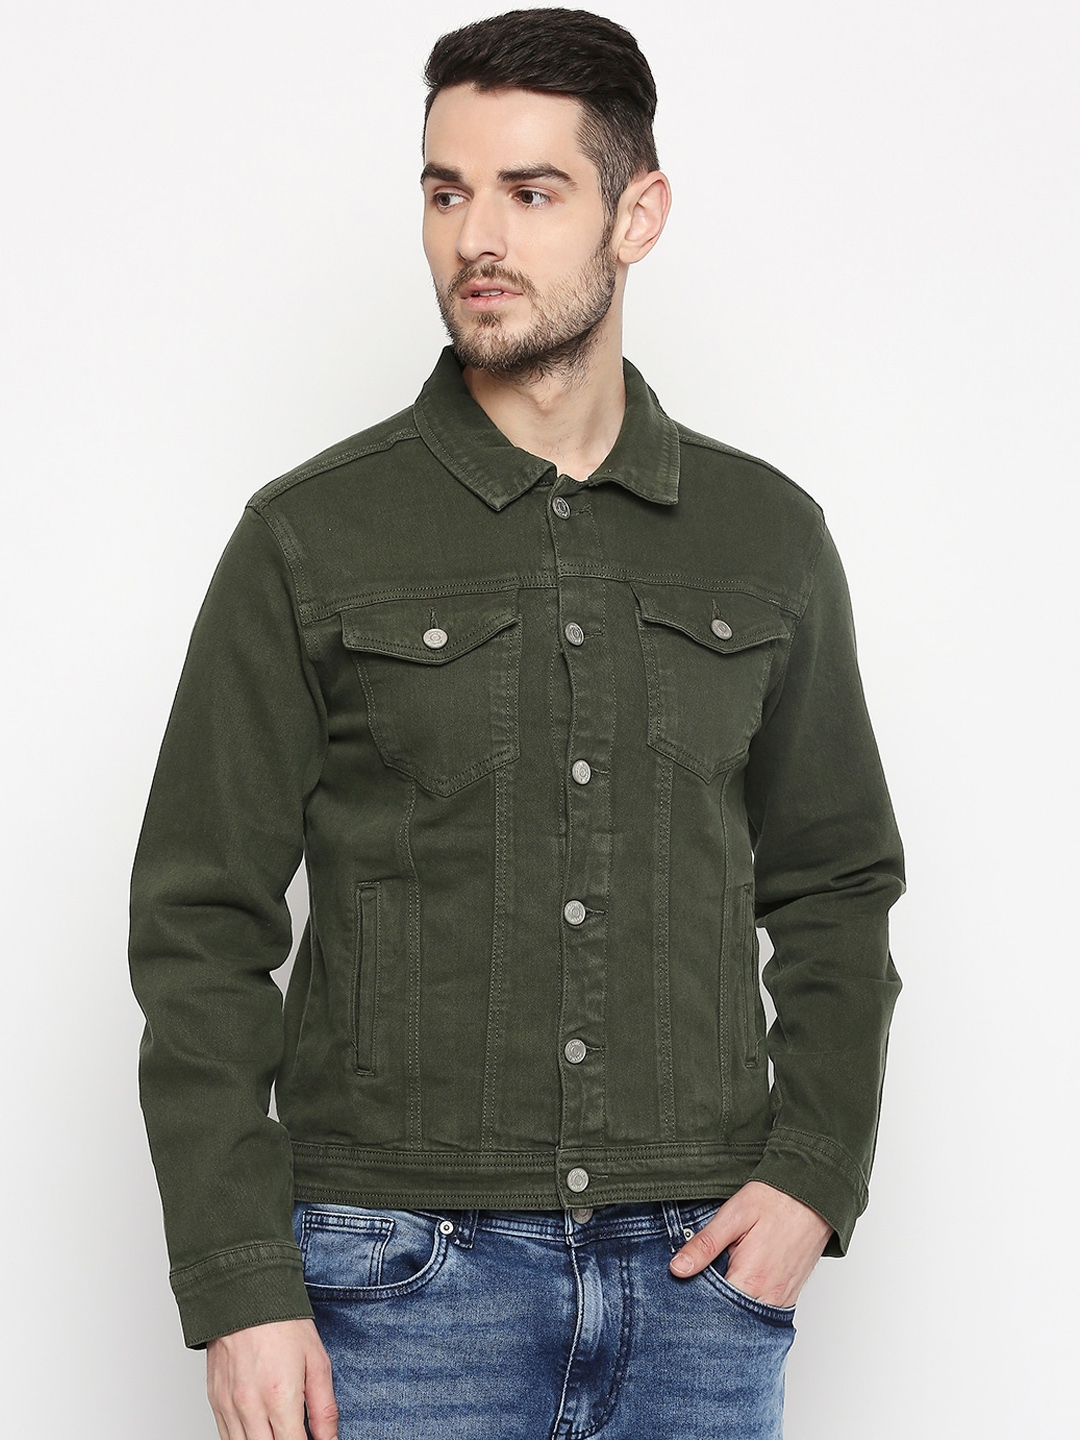 Buy People Men Olive Green Solid Denim Jacket - Jackets for Men ...